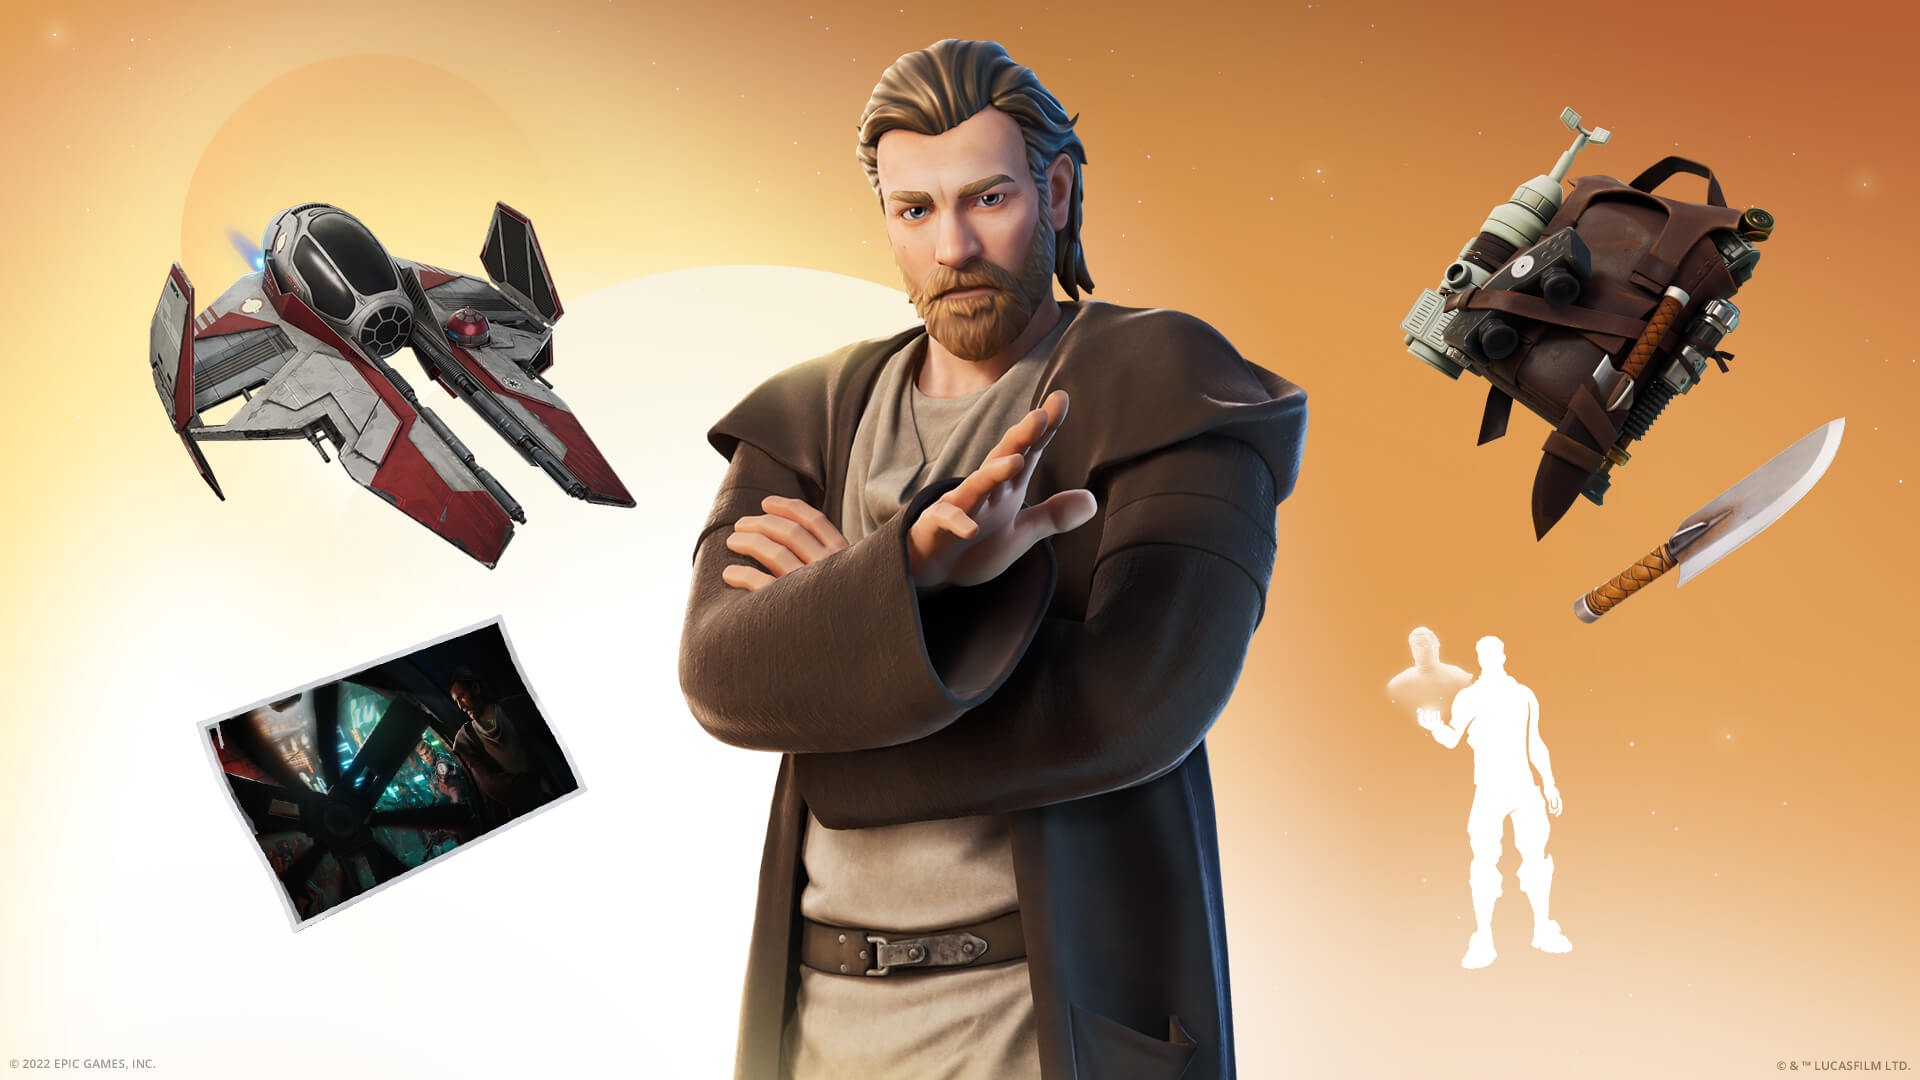 The Obi-Wan Kenobi Fortnite skin and its accessories